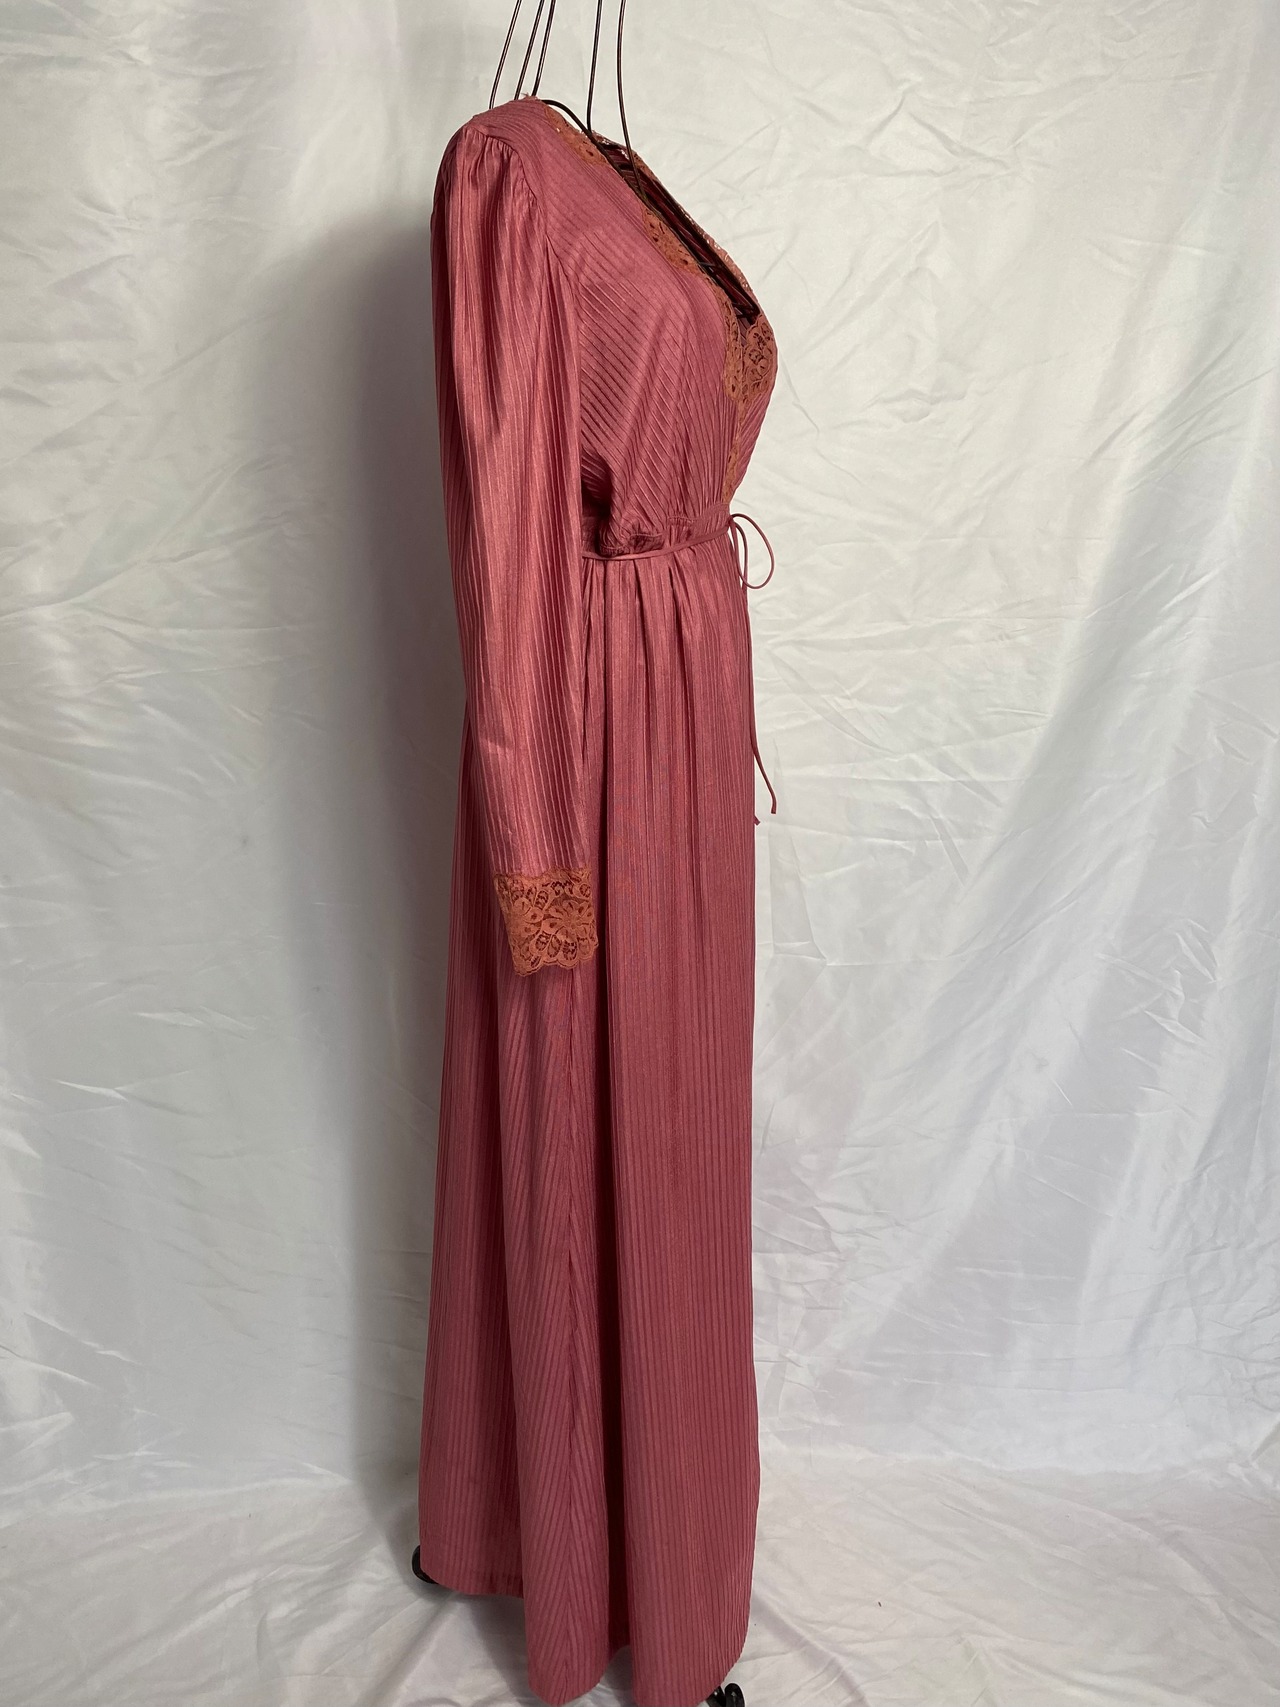 70’s Lingerie dress Made in U.S.A